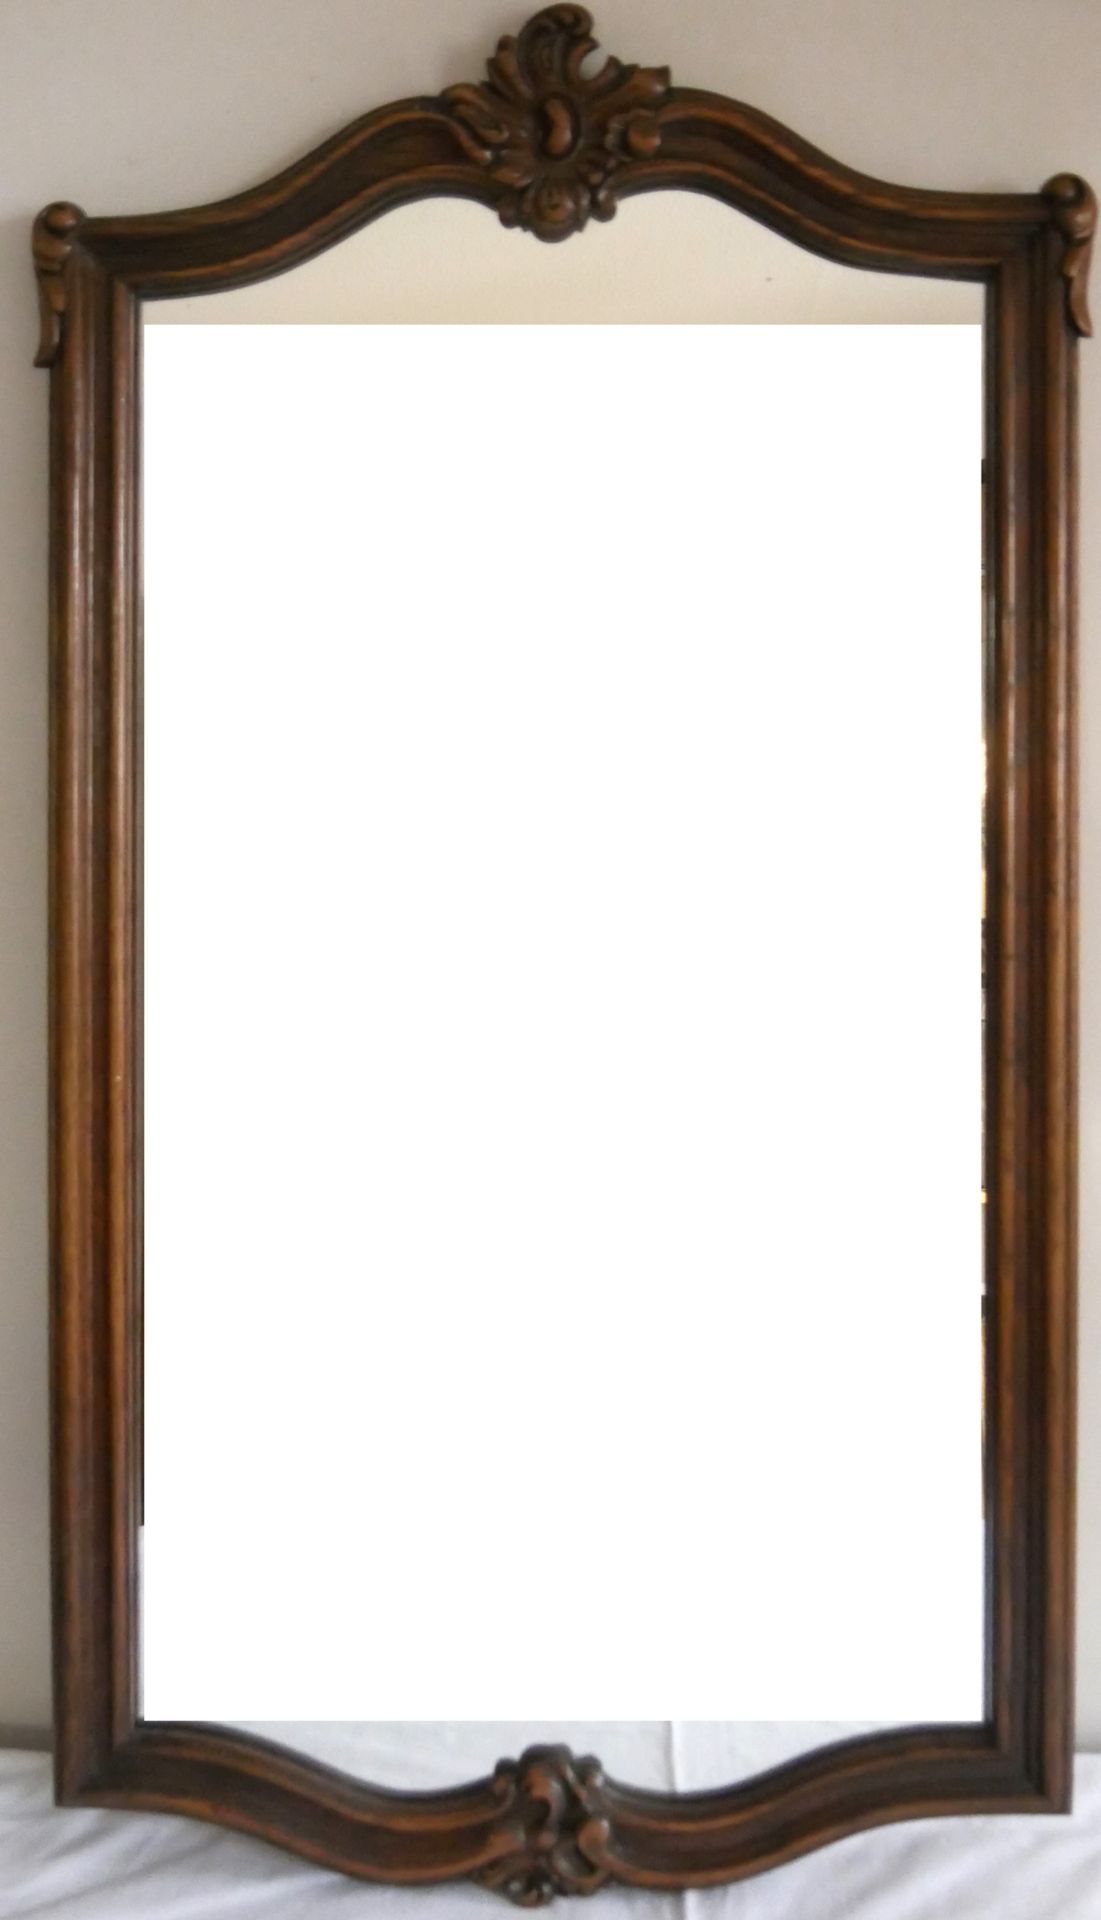 Spiegel im Holzrahmen, Höhe ca. 85 cm, Breite ca. 43 cm